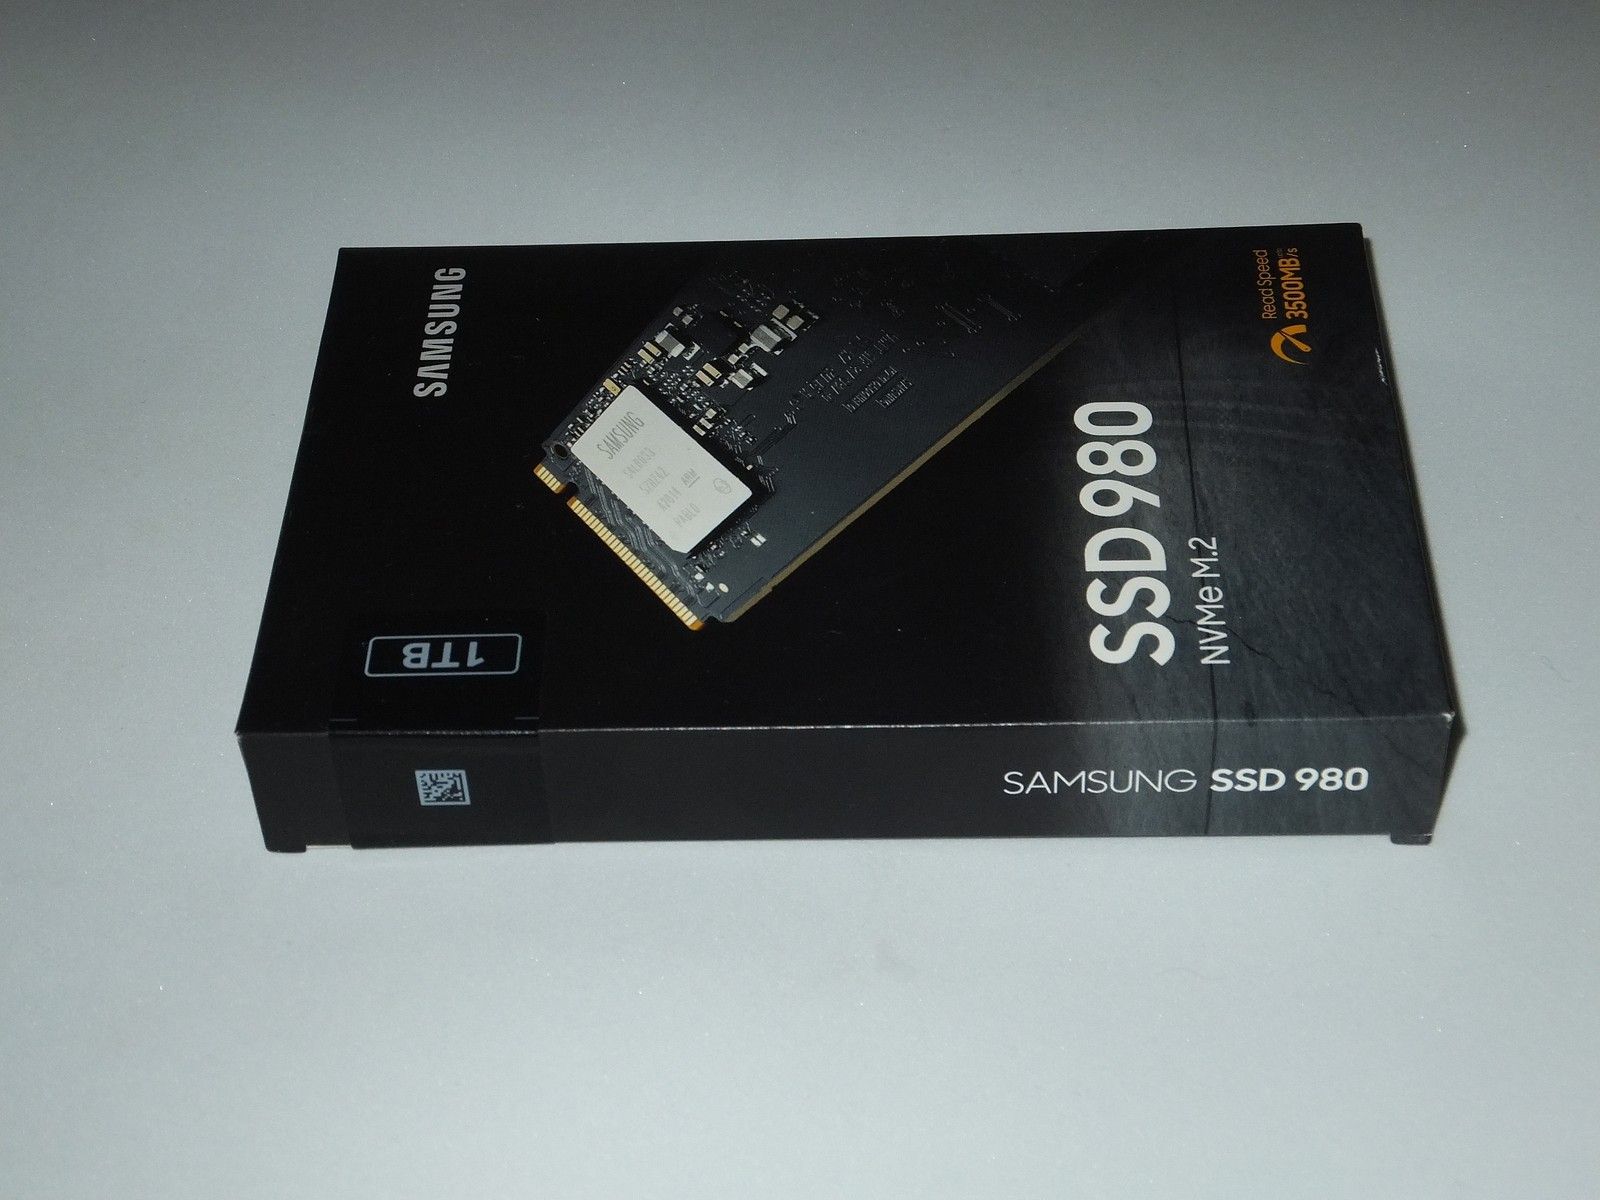 SSD Samsung 980 1tb. Коробка от SSD Samsung. 980 SSD Samsung скорость. Samsung 980 Pro 1tb радиатором коробка. Ssd 980 mz v8v1t0bw